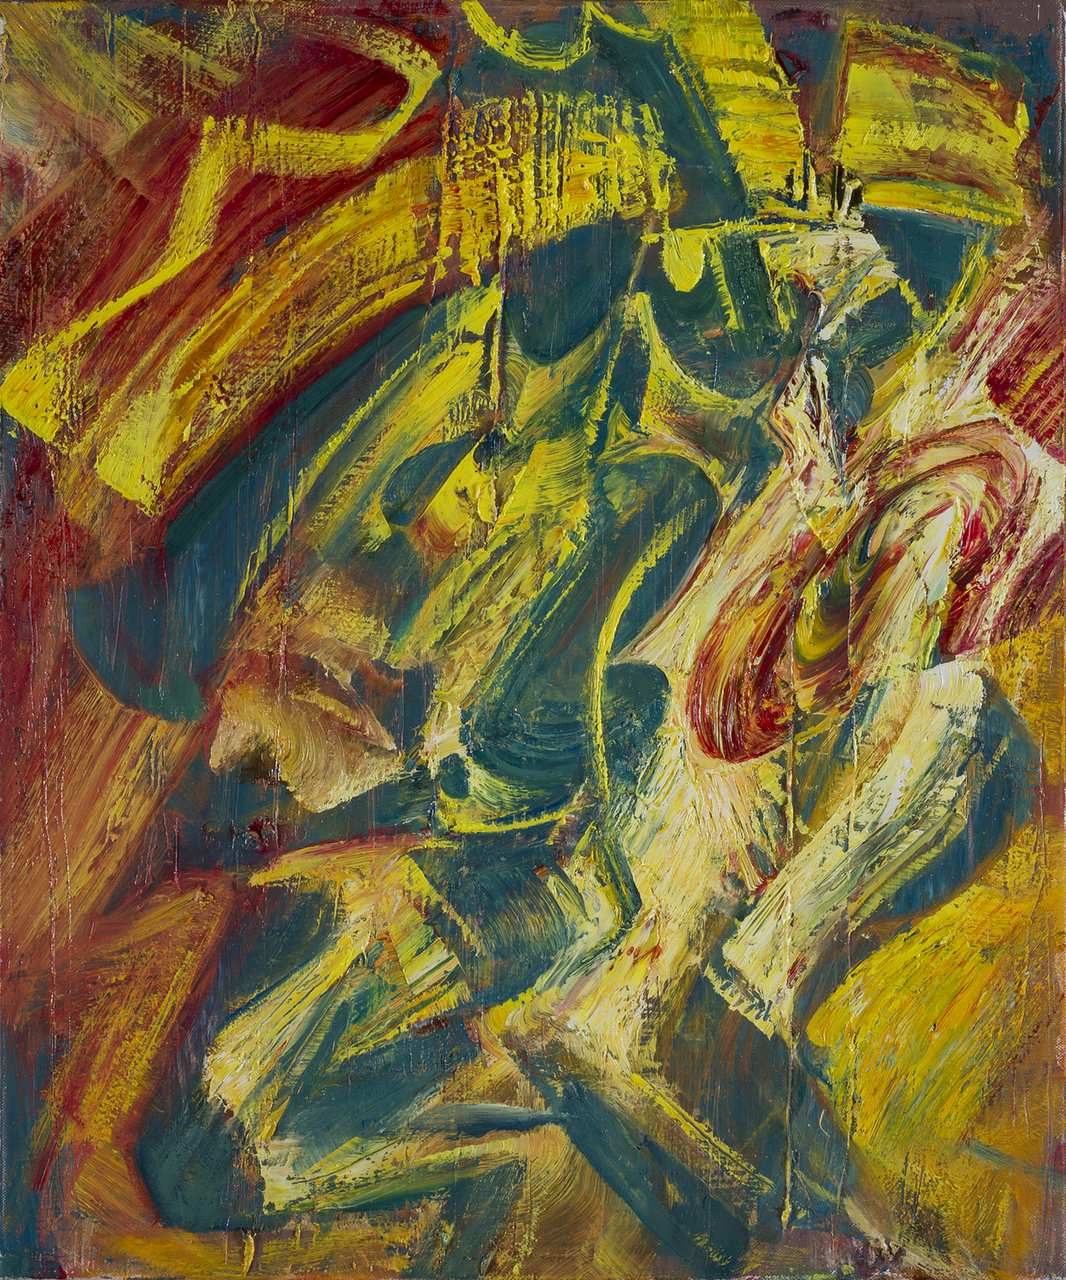 Royal, oil on canvas, 50 x 60 cm, 2017